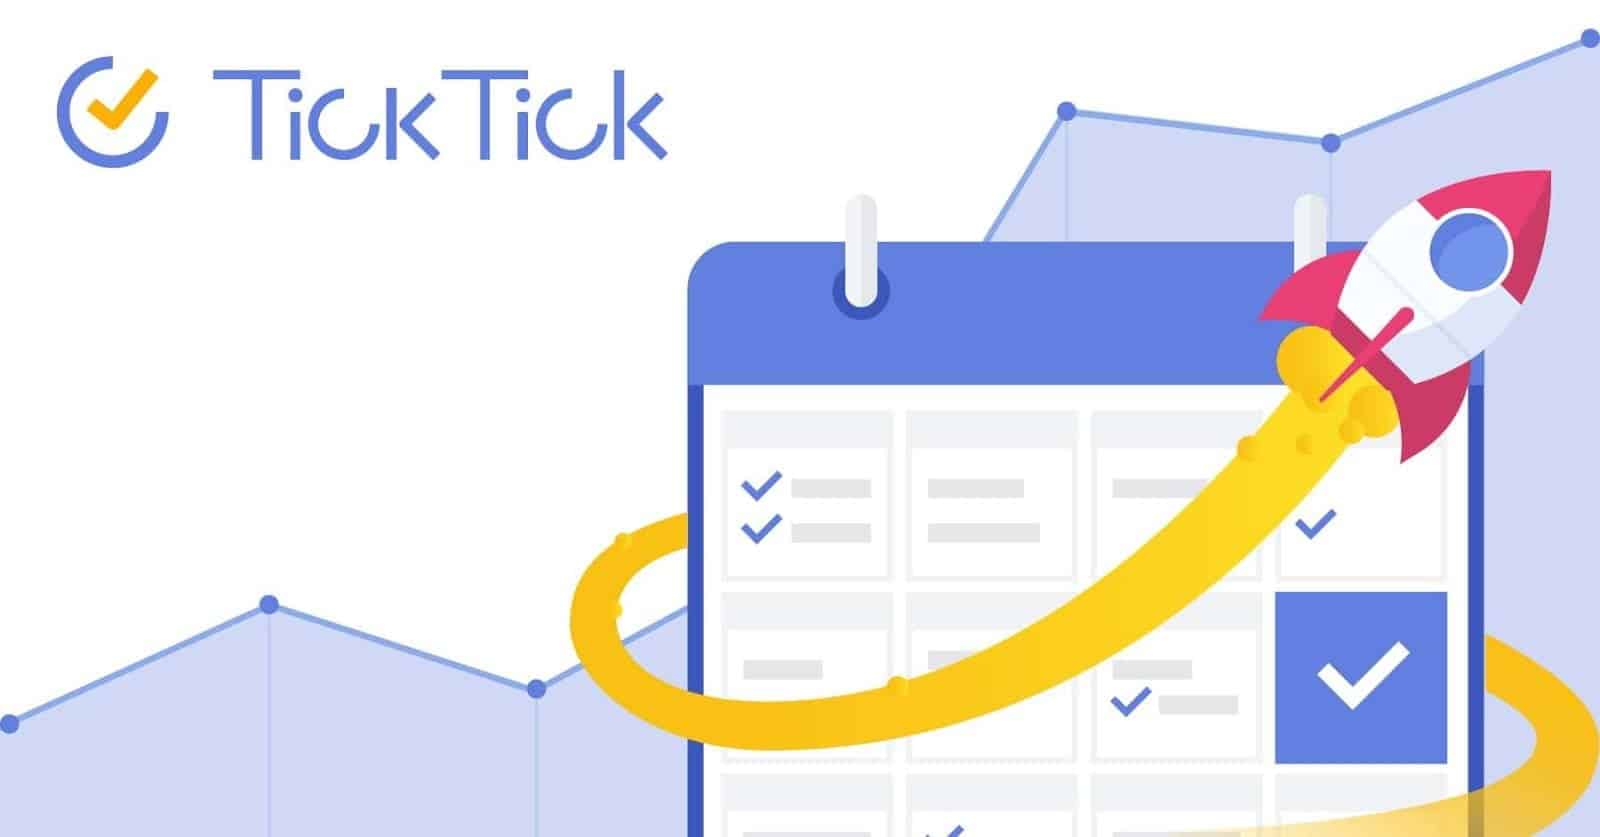 كيفية استخدام TickTick لمزيد من الإنتاجية: الملاحظات والقراءة لاحقًا والمهام - شروحات